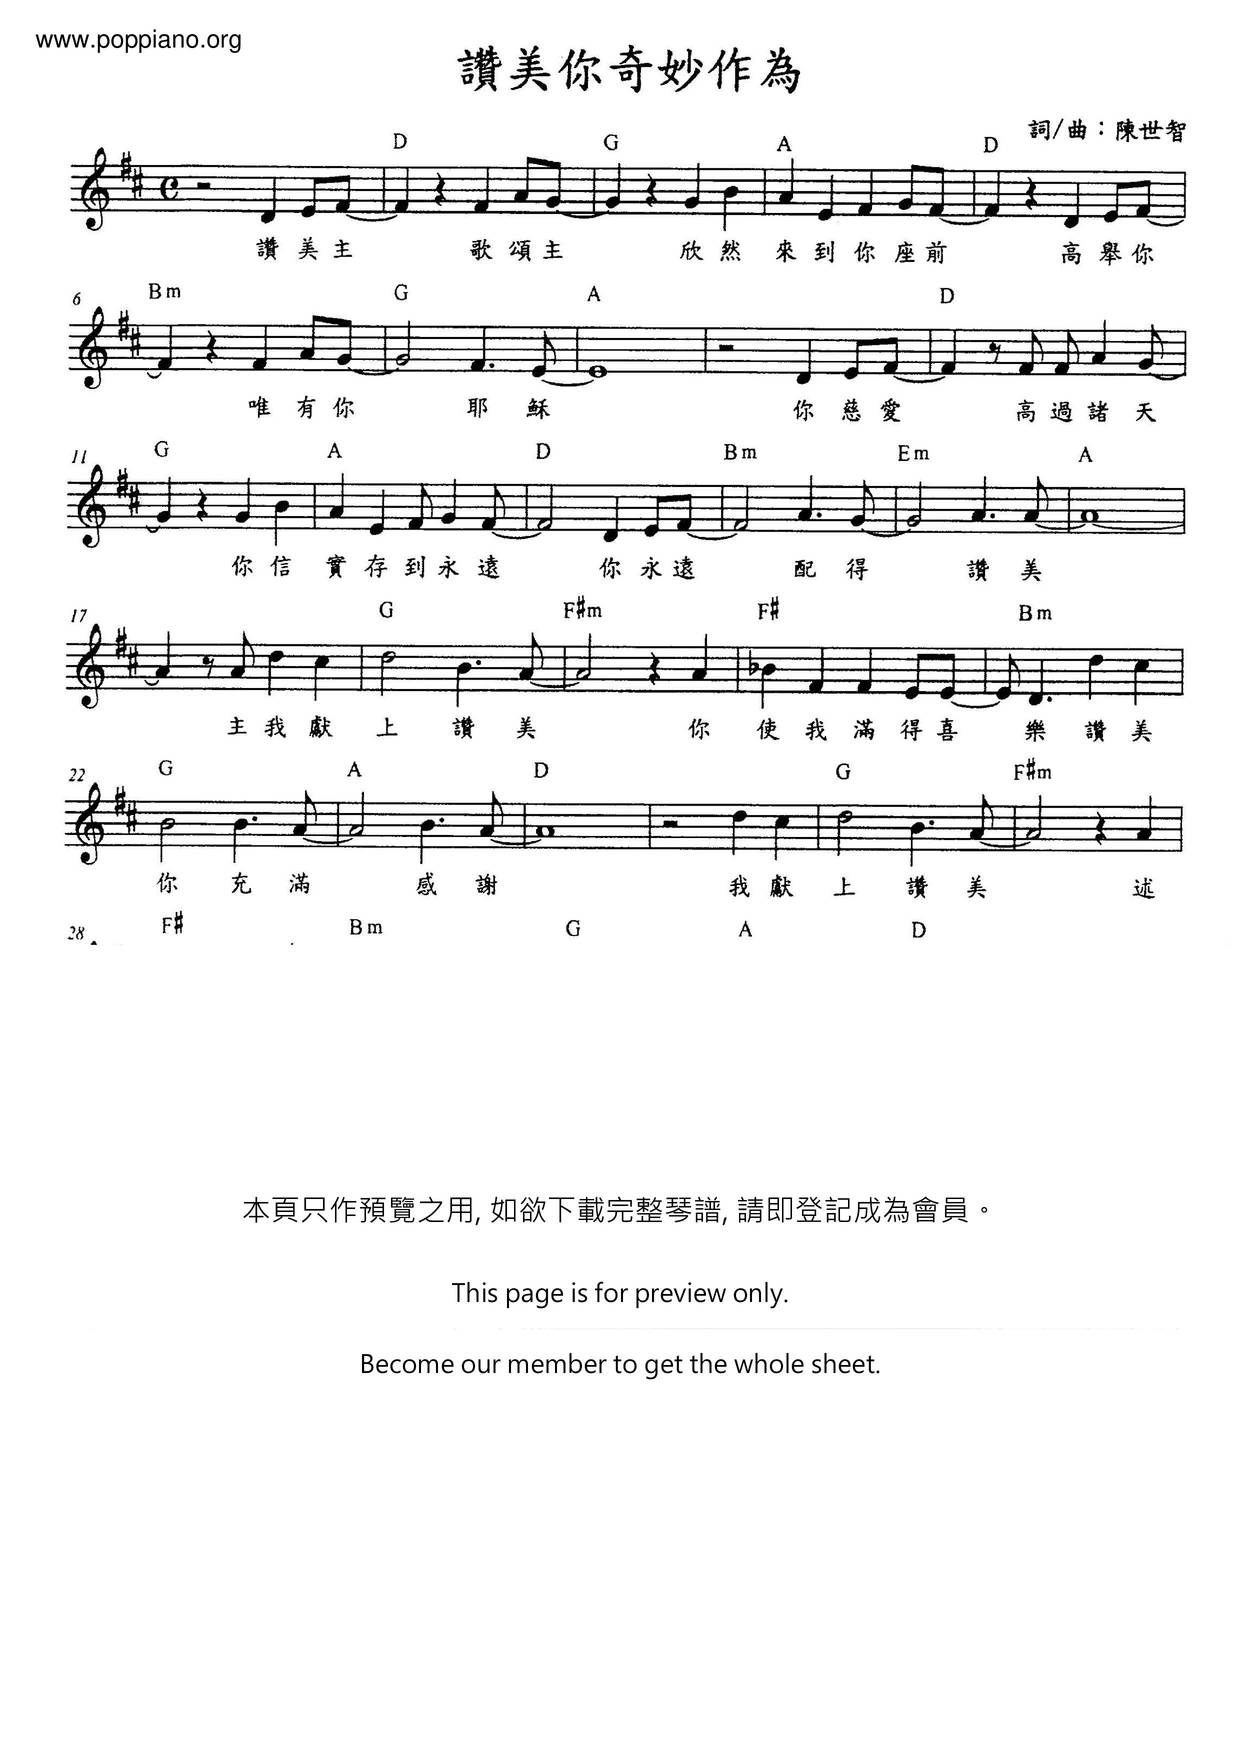 诗歌 赞美你奇妙作为琴谱 五线谱pdf 香港流行钢琴协会琴谱下载